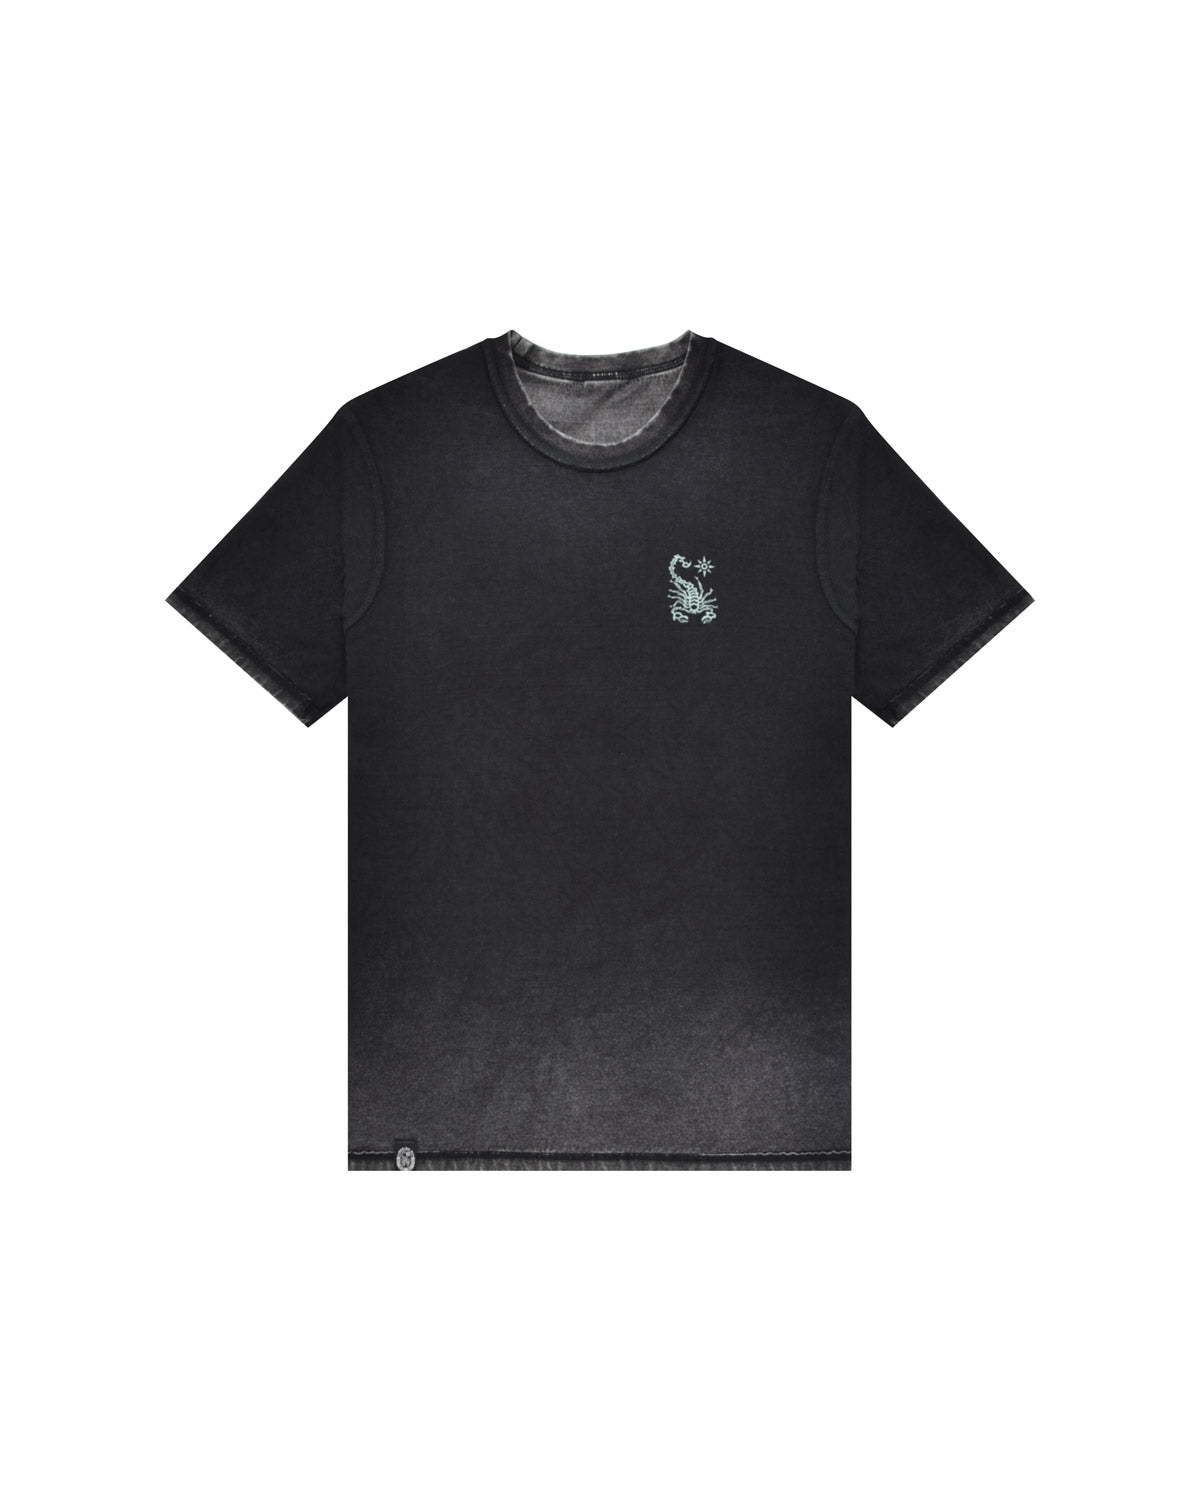 Uomo | T-Shirt Doubleface Effetto Slavato Con Stampa “Spectral Board”